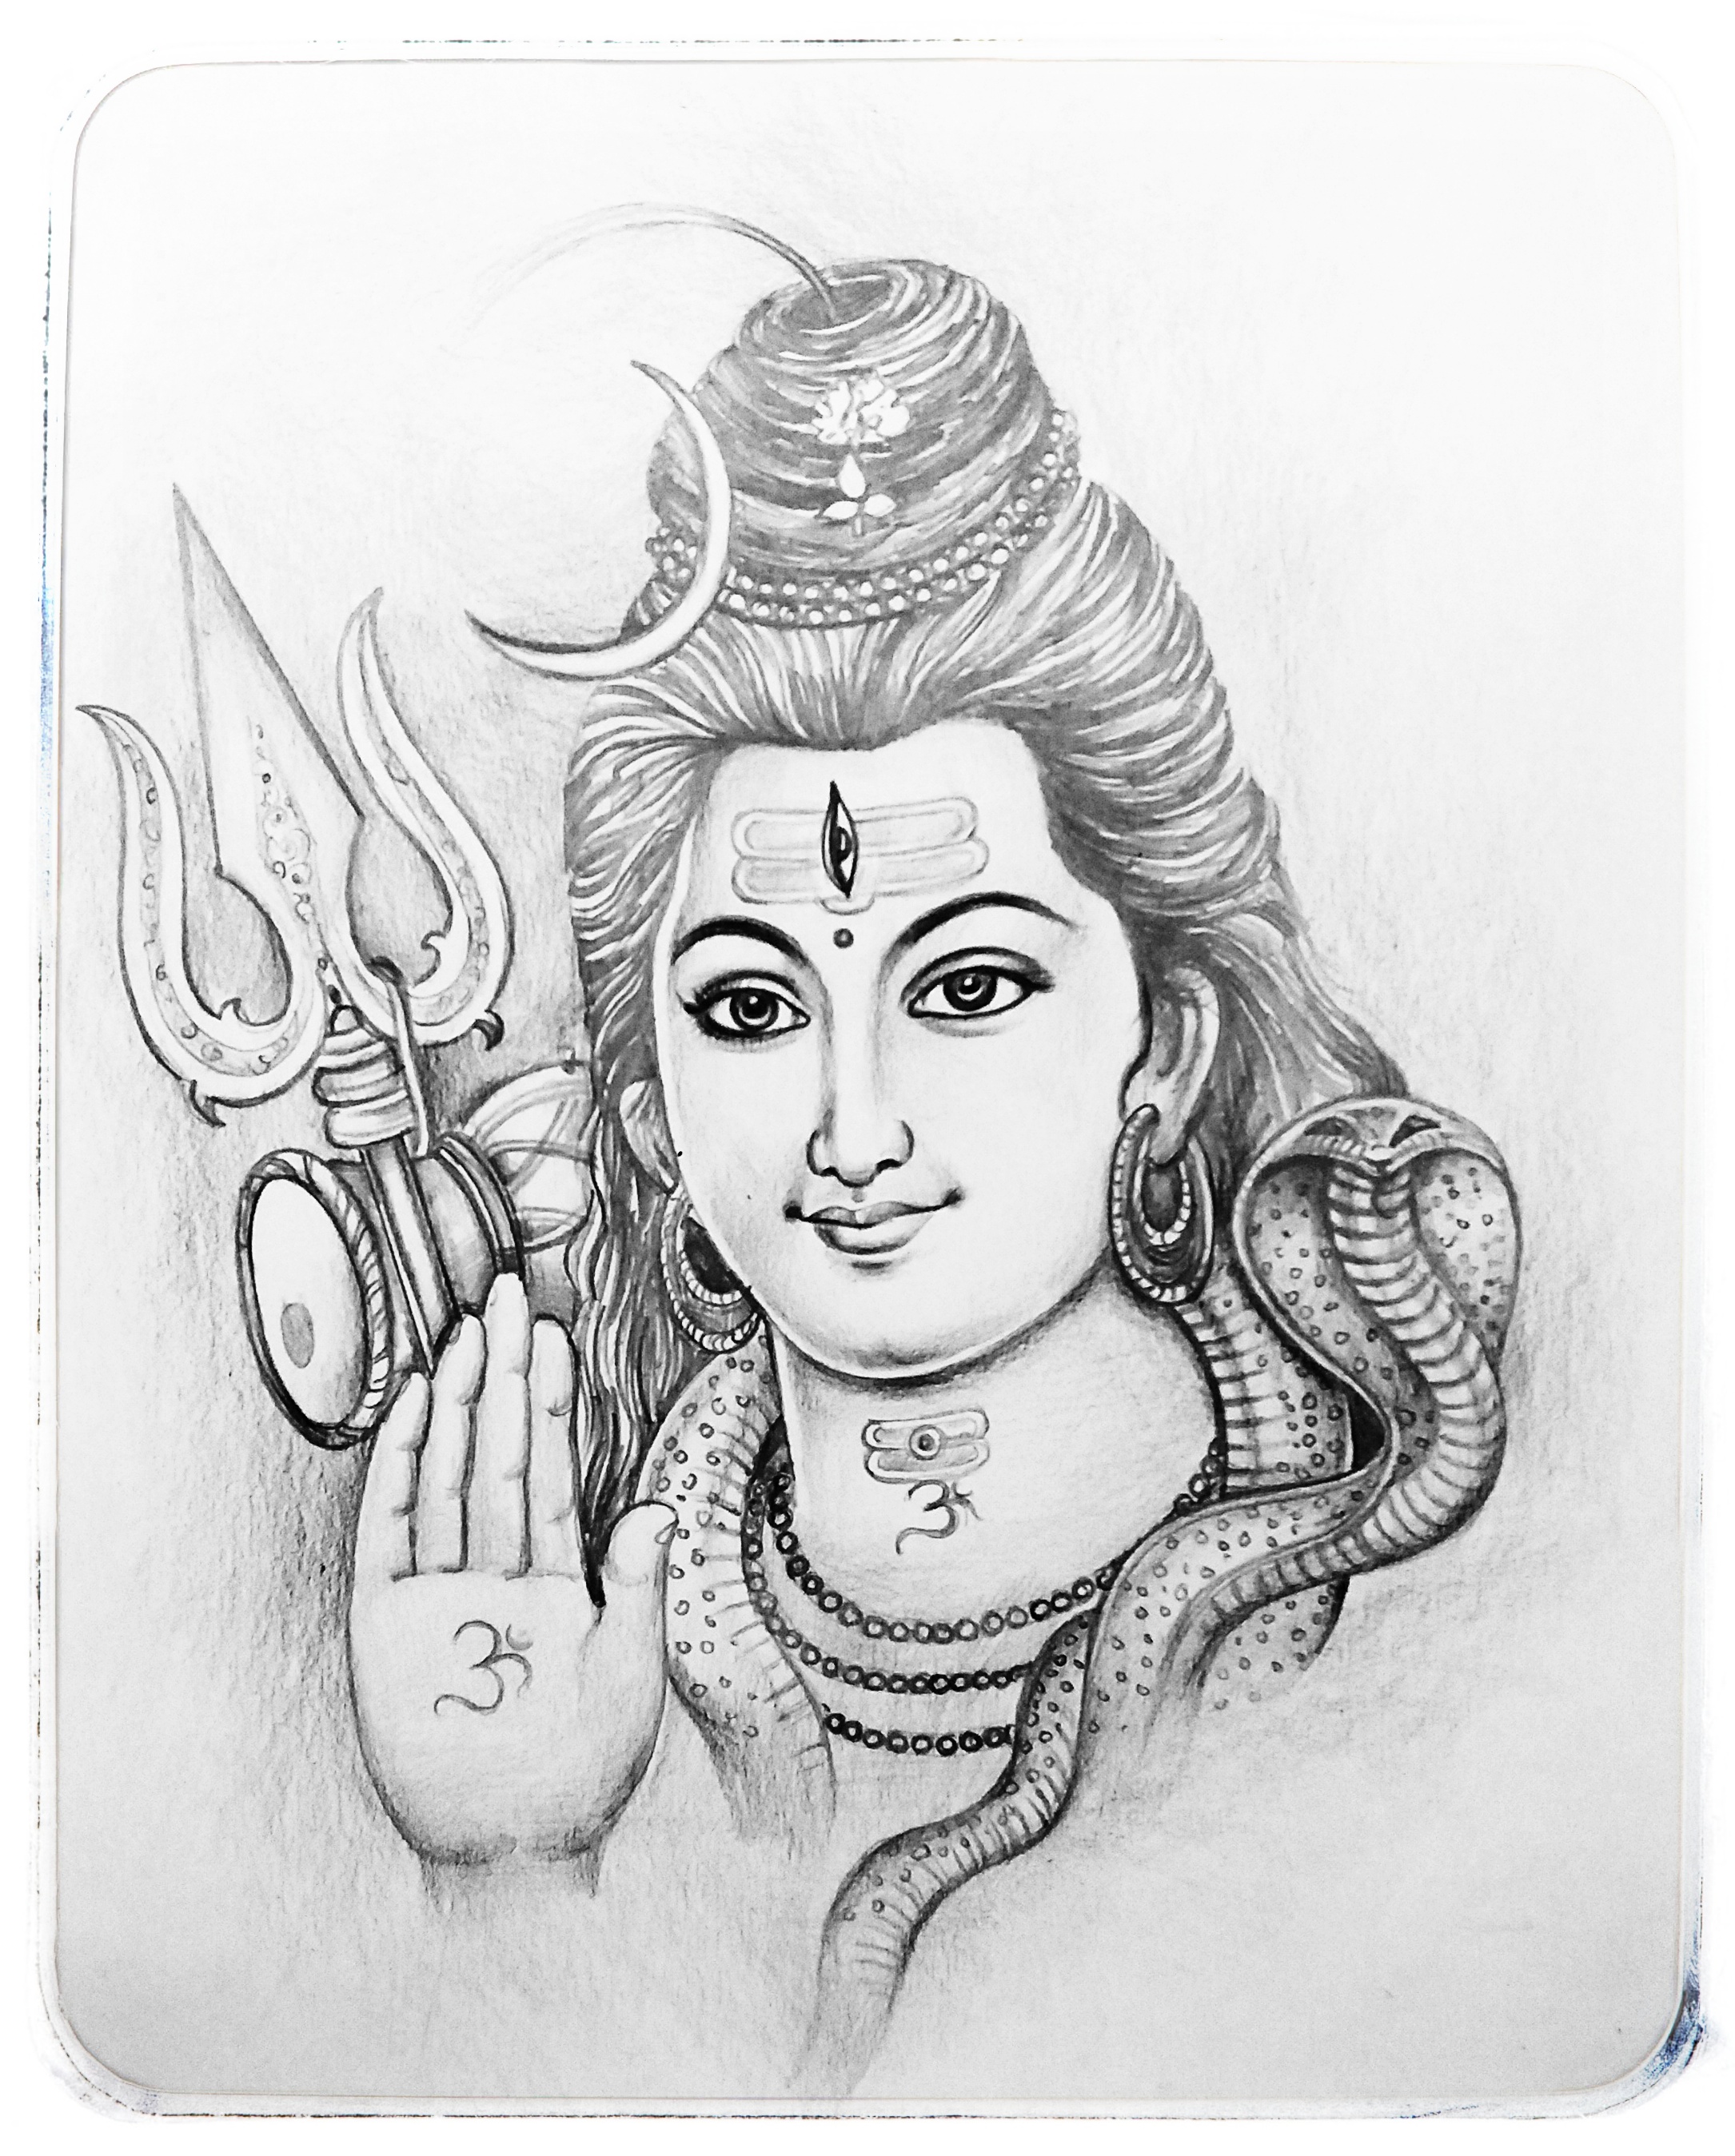 makarsankranti special drawing of lord Aaiyappa Swami - YouTube